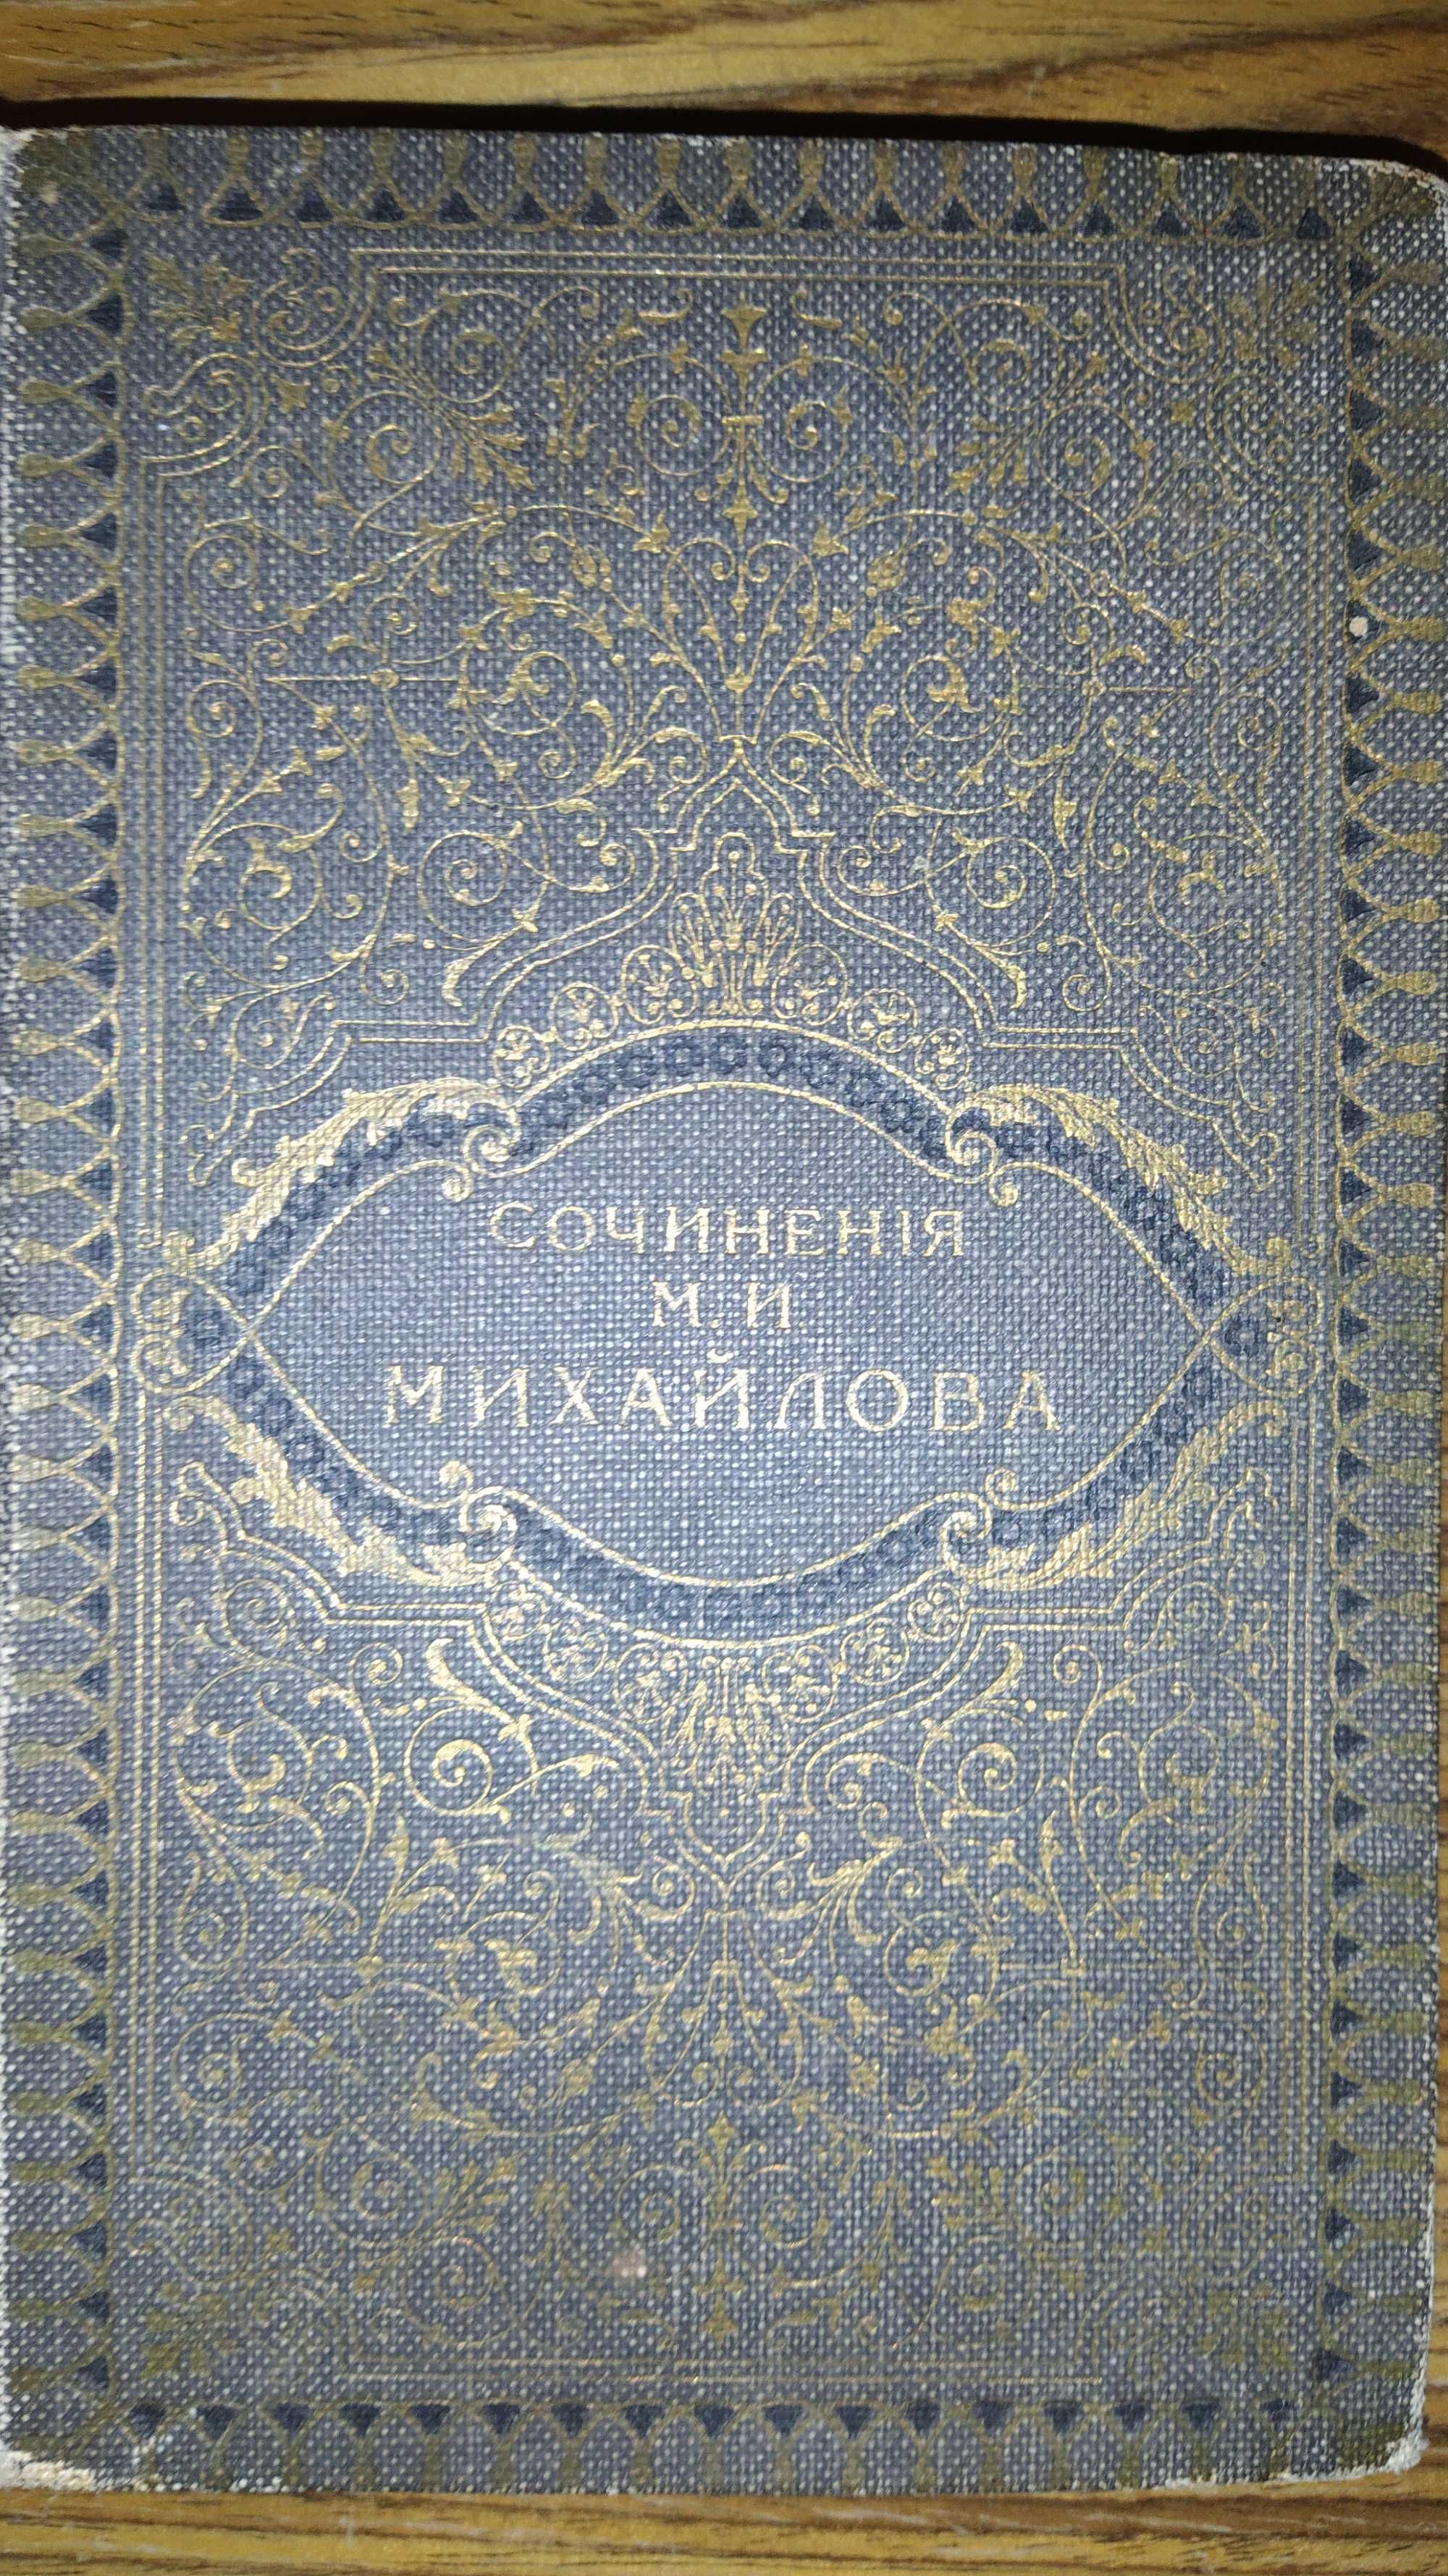 Книги советского времени и книга 1915 года издания.